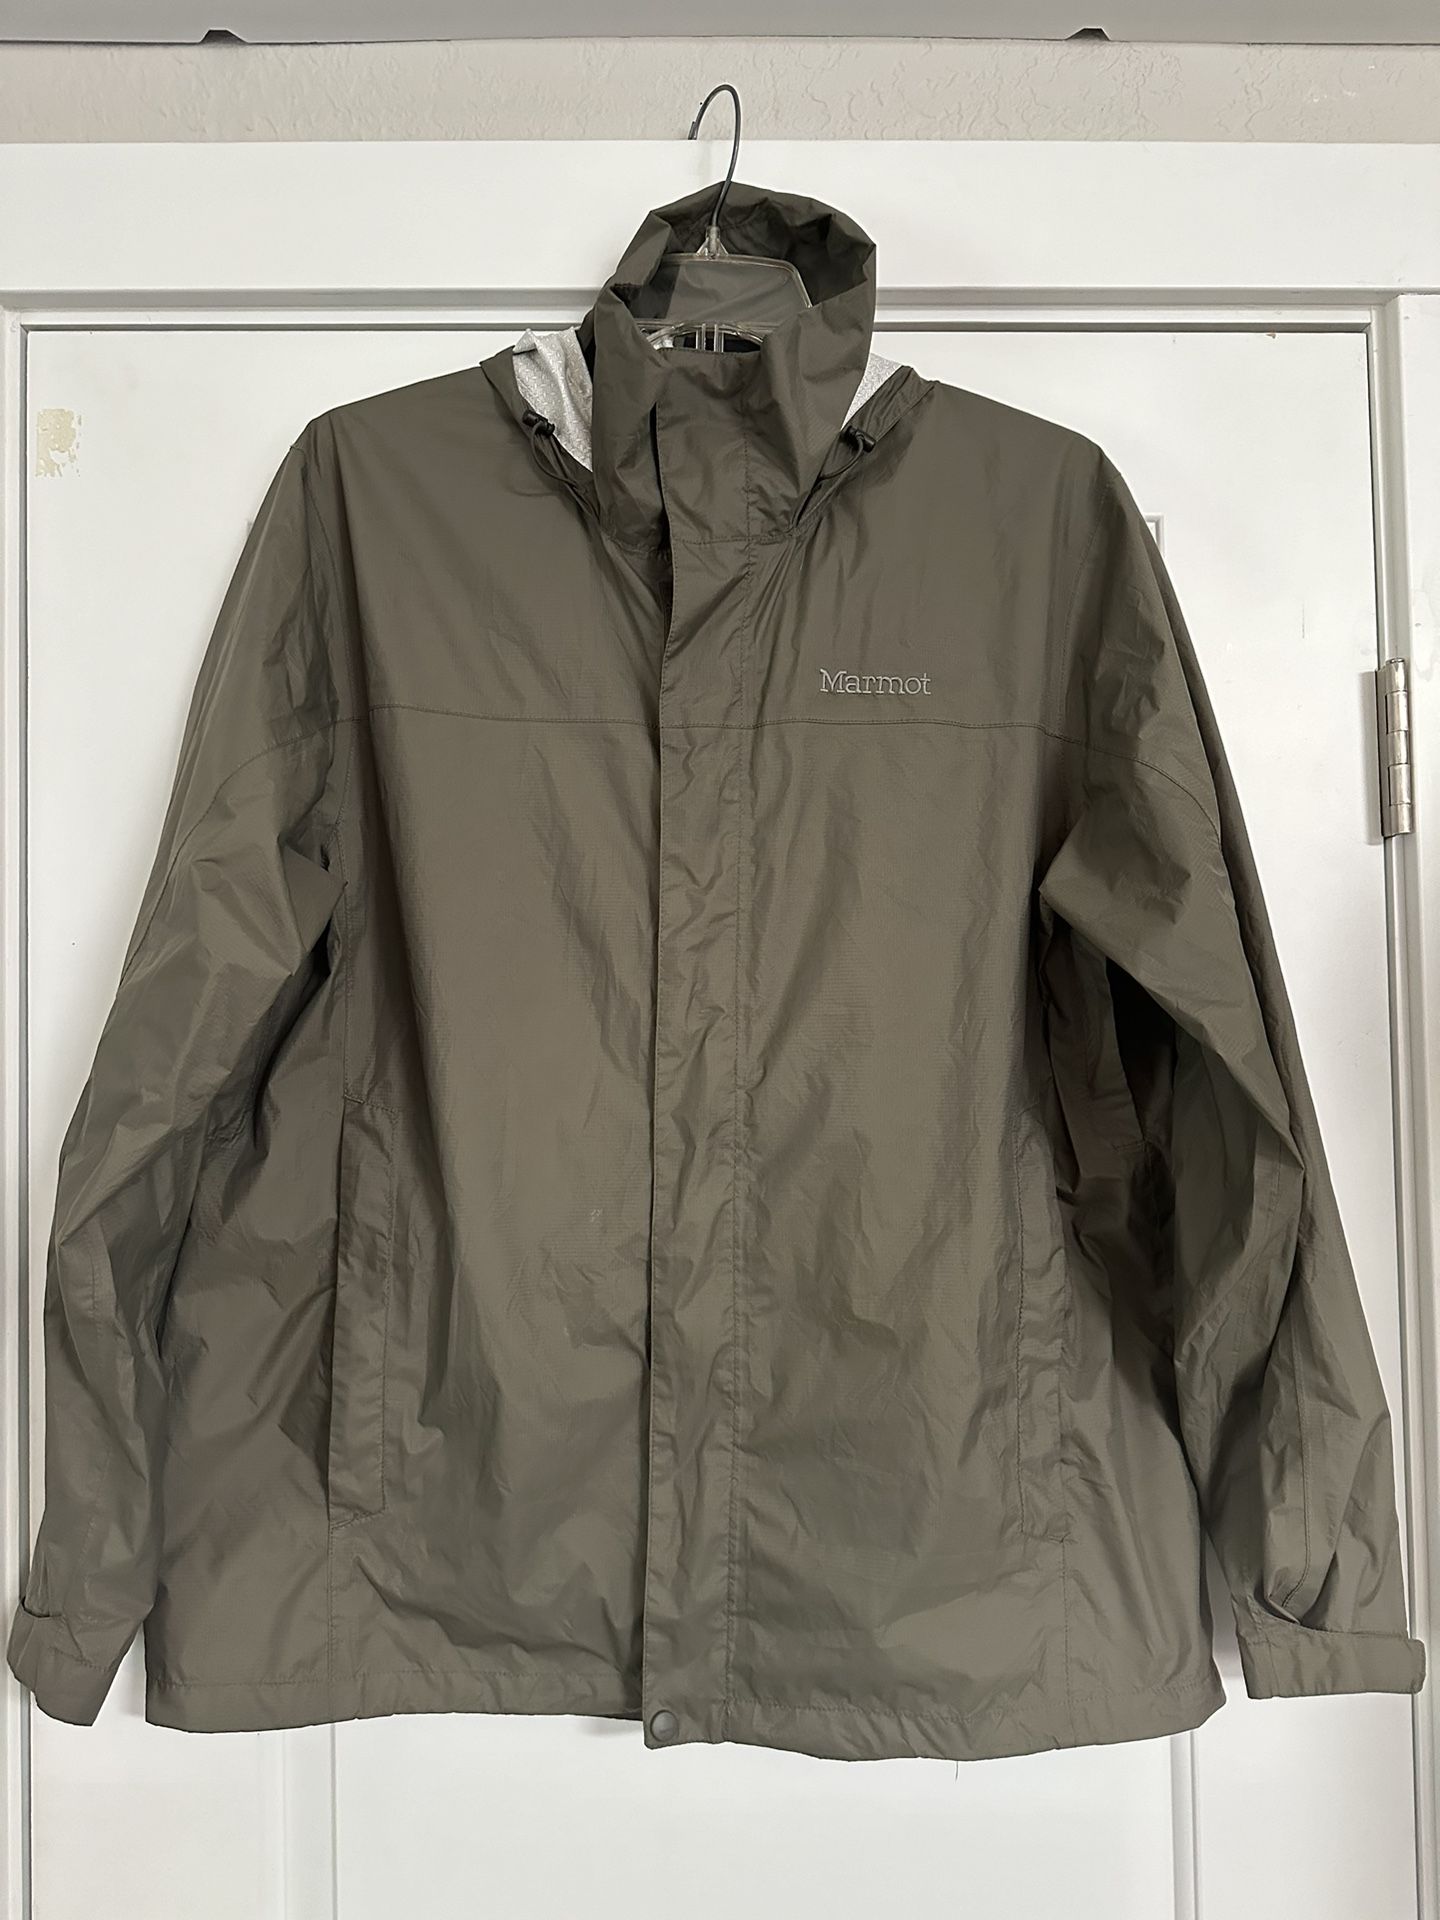 Men’s XL Marmot Jacket